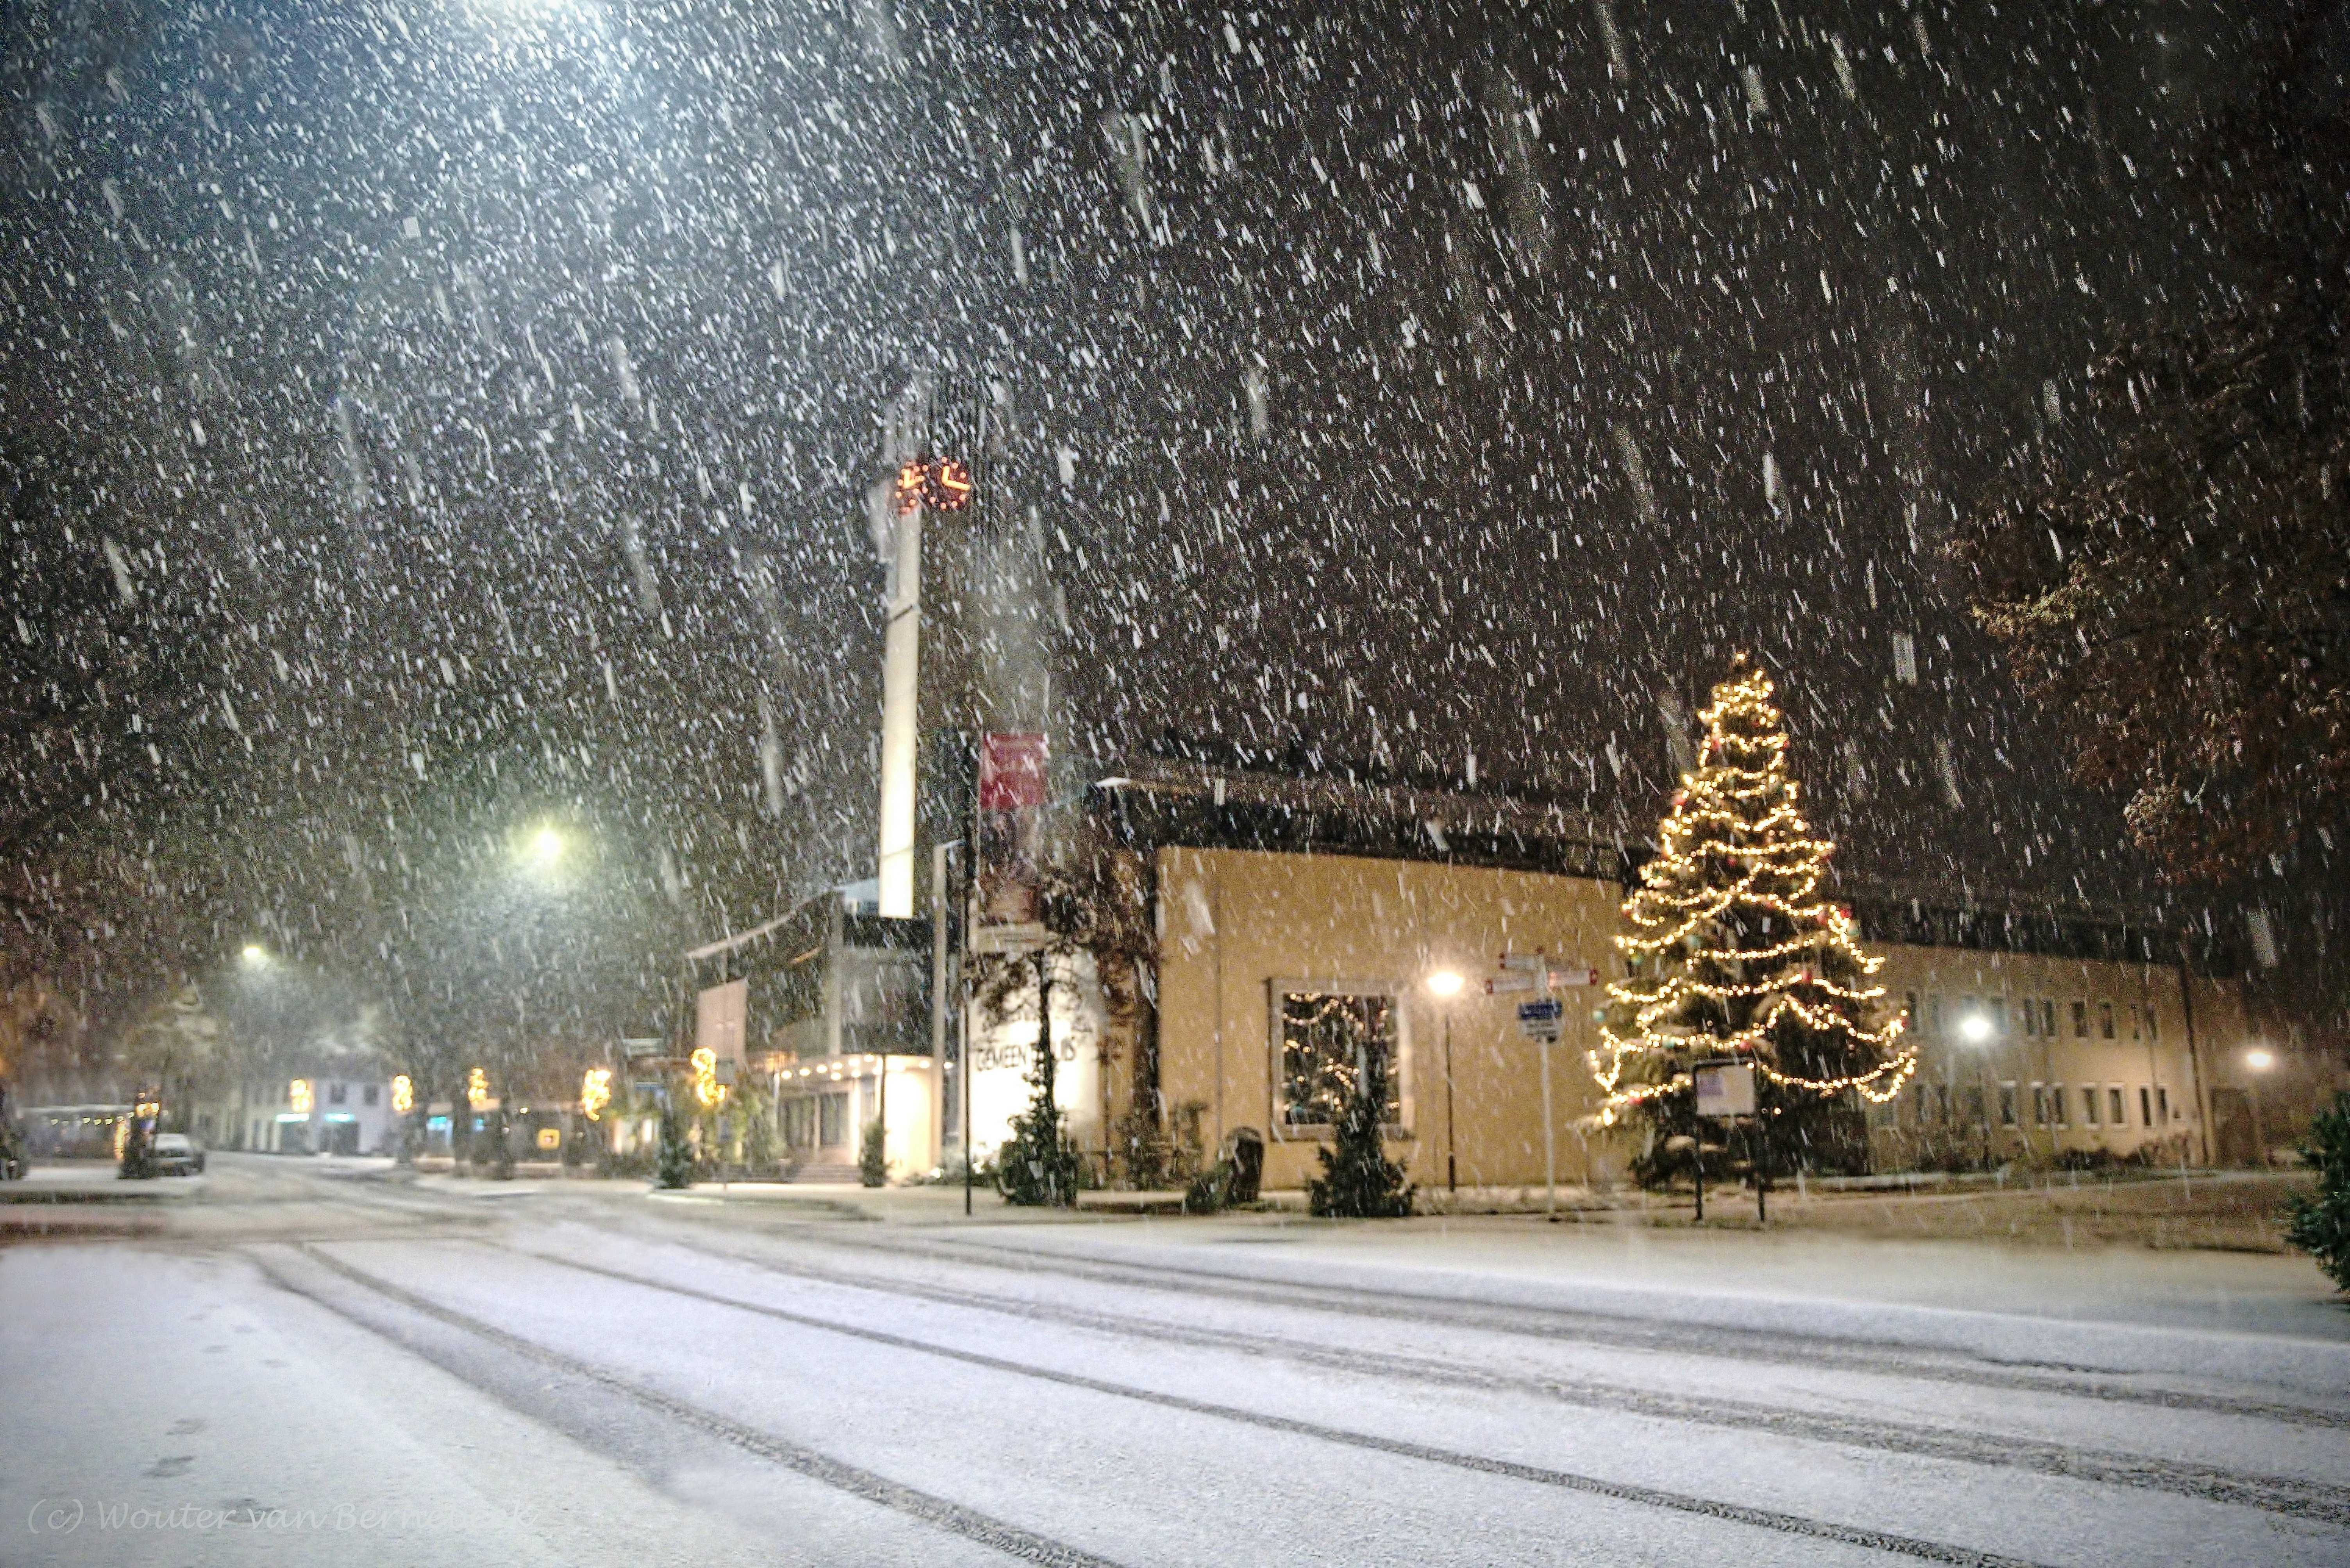 Witte kerst, kerstboom en sneeuwlandschap. Foto: Wouter van Bernebeek